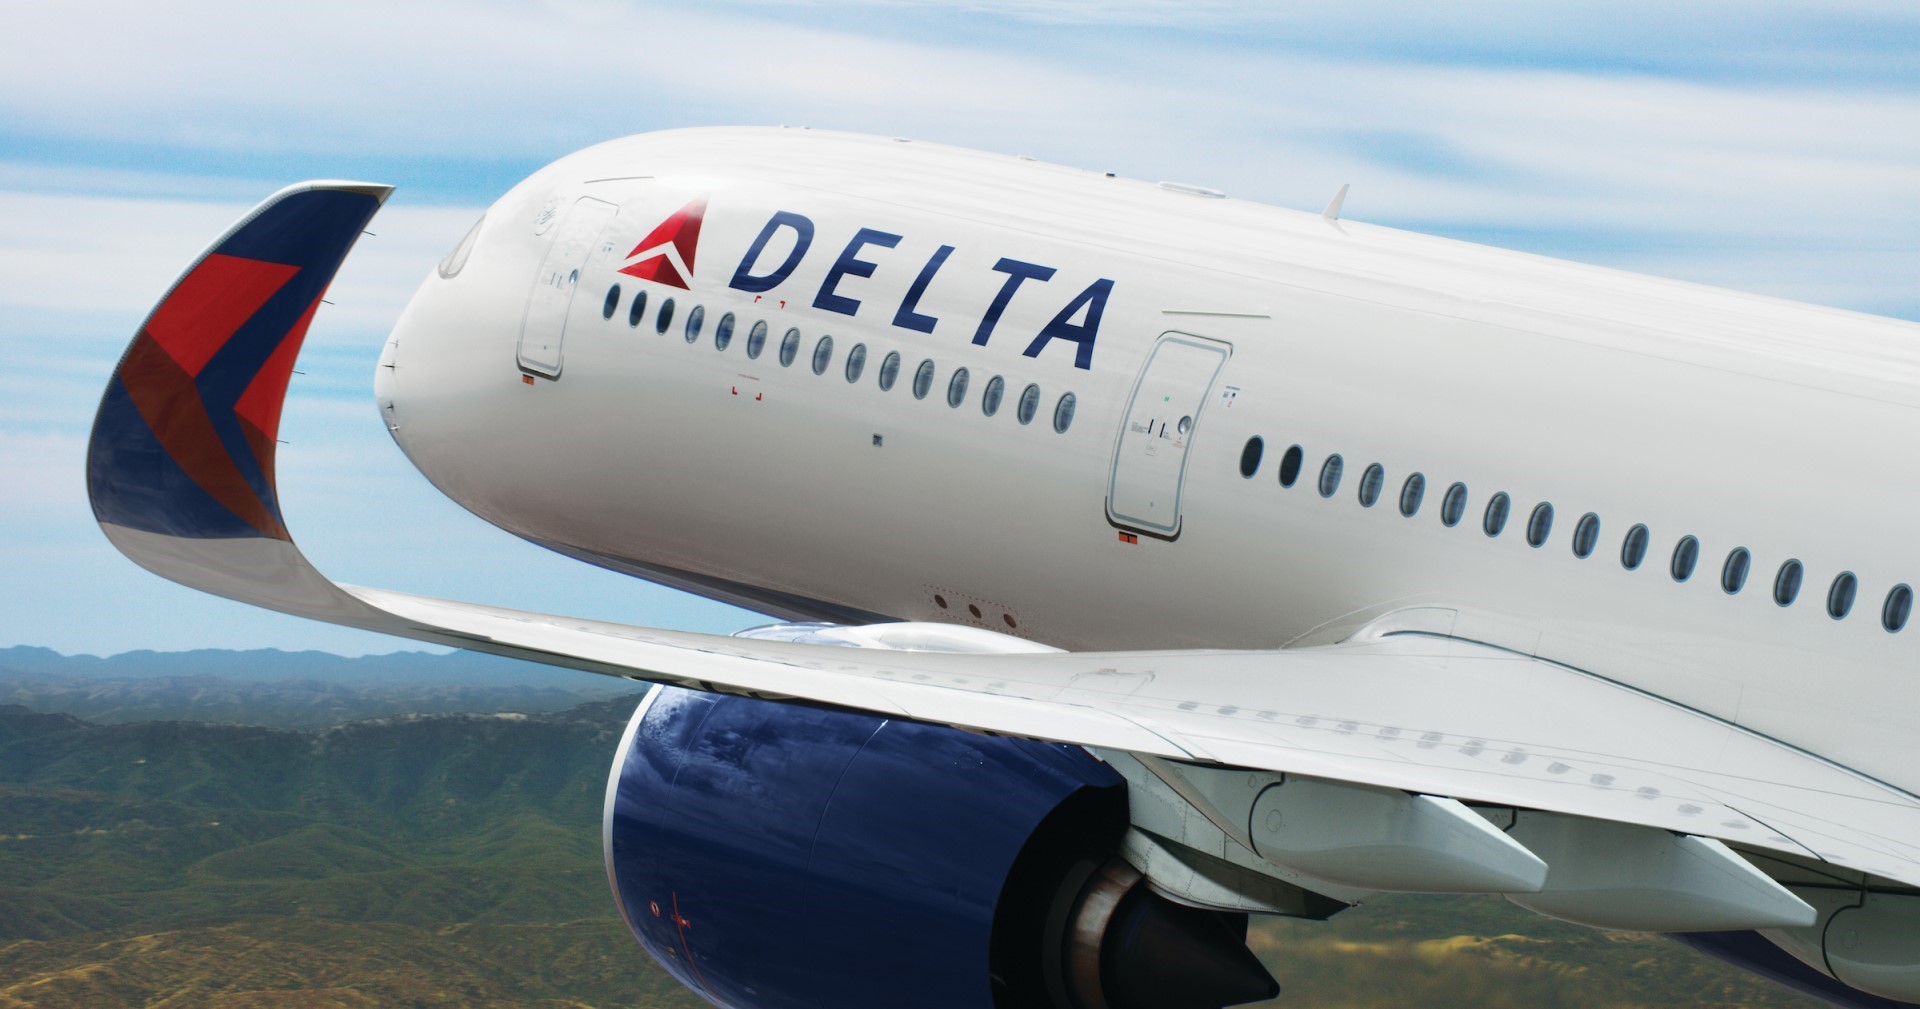 สายการบิน Delta Air Lines ของสหรัฐฯ จะปล่อยไวไฟฟรีบนเครื่องภายในวันที่ 1 กุมภาพันธ์นี้